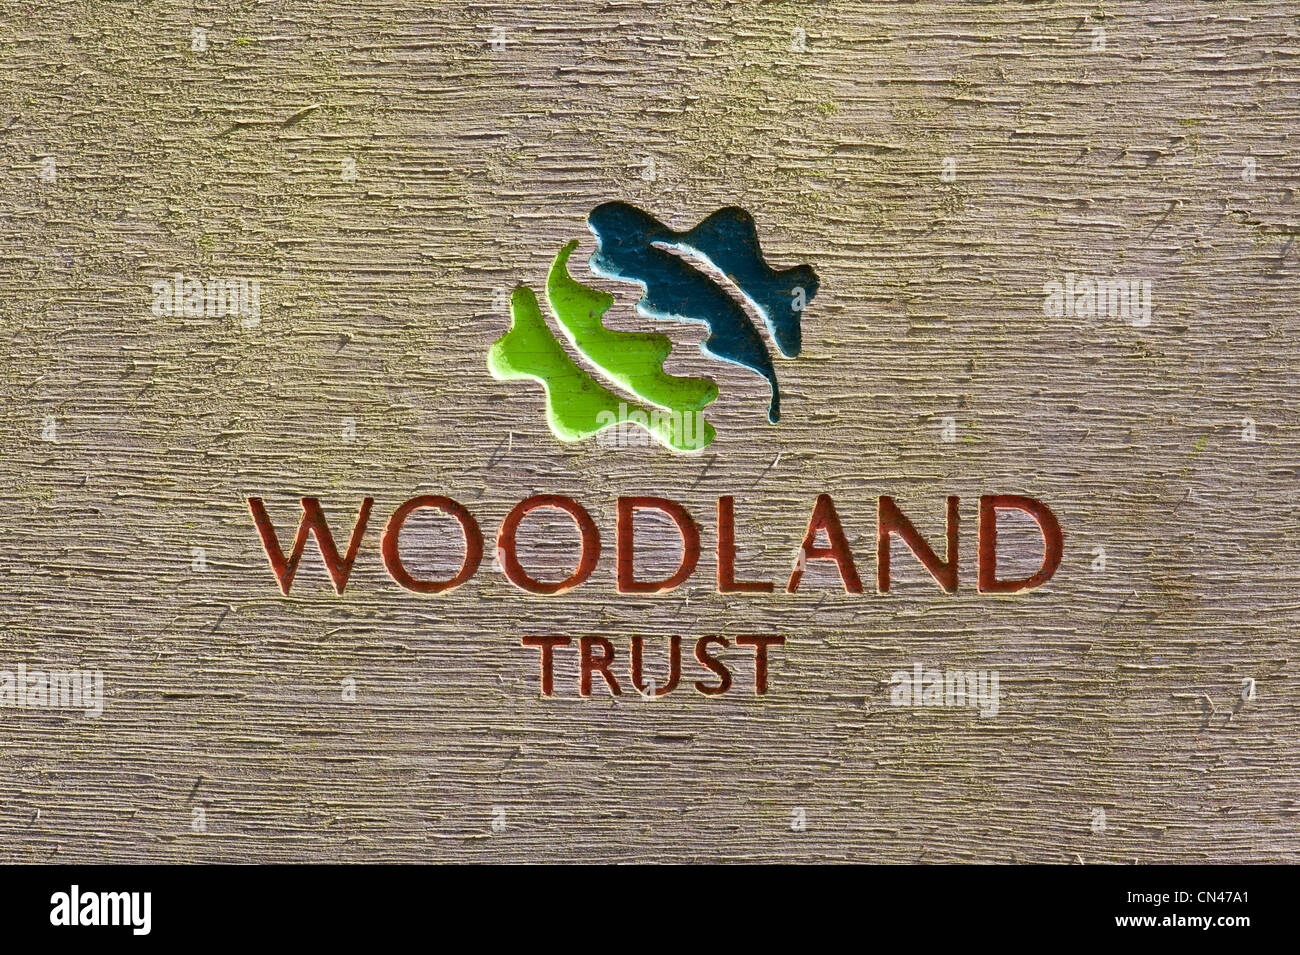 Woodland Trust segno scolpito in legno Foto Stock